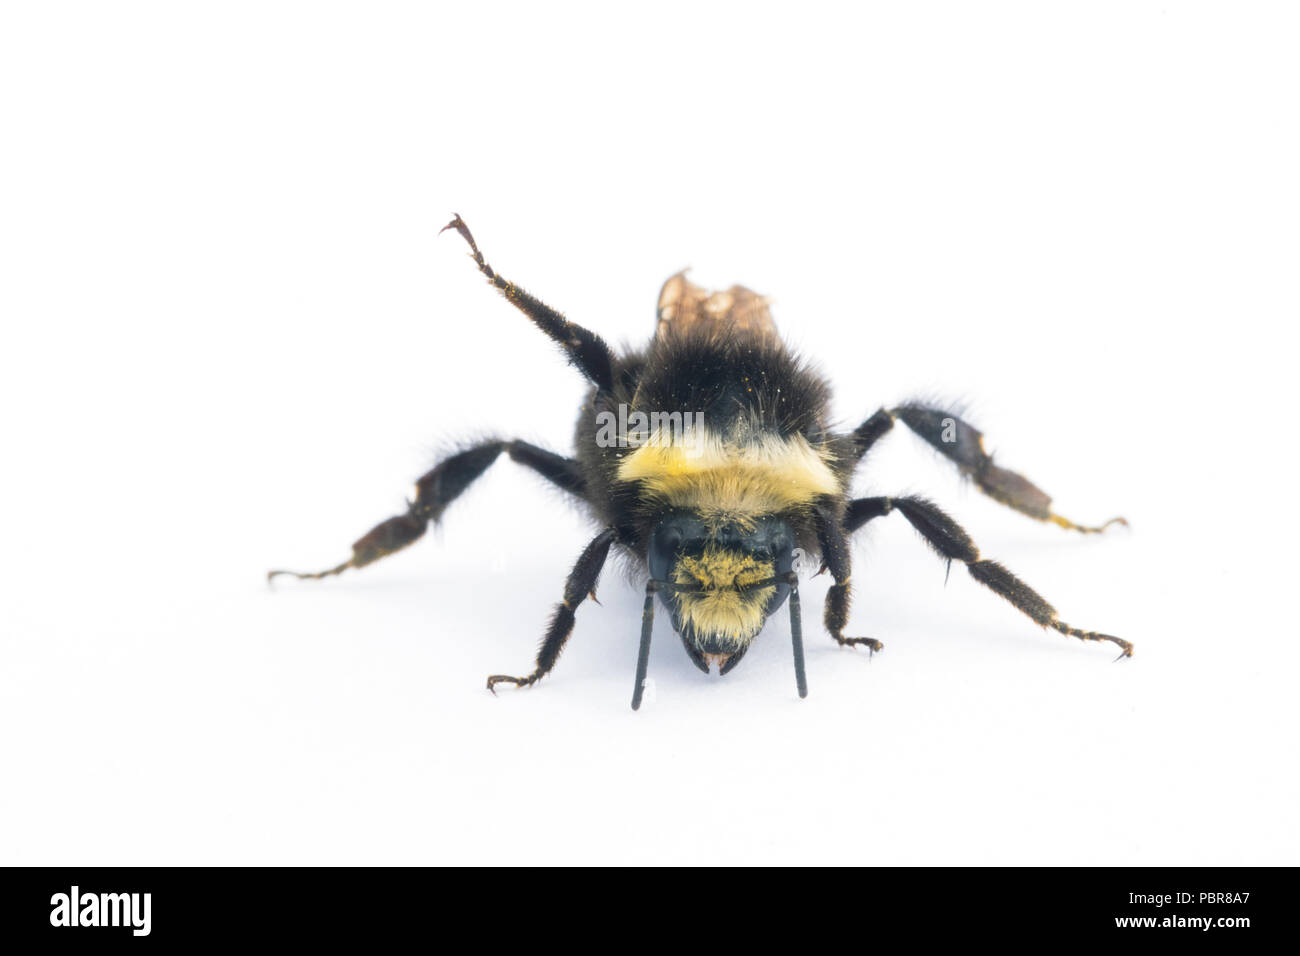 Gelb - konfrontiert, Hummel (Bombus vosnesenskii) Gemeinsame bumble bee aus dem nordwestlichen UNS, Nahaufnahme portrait Stockfoto